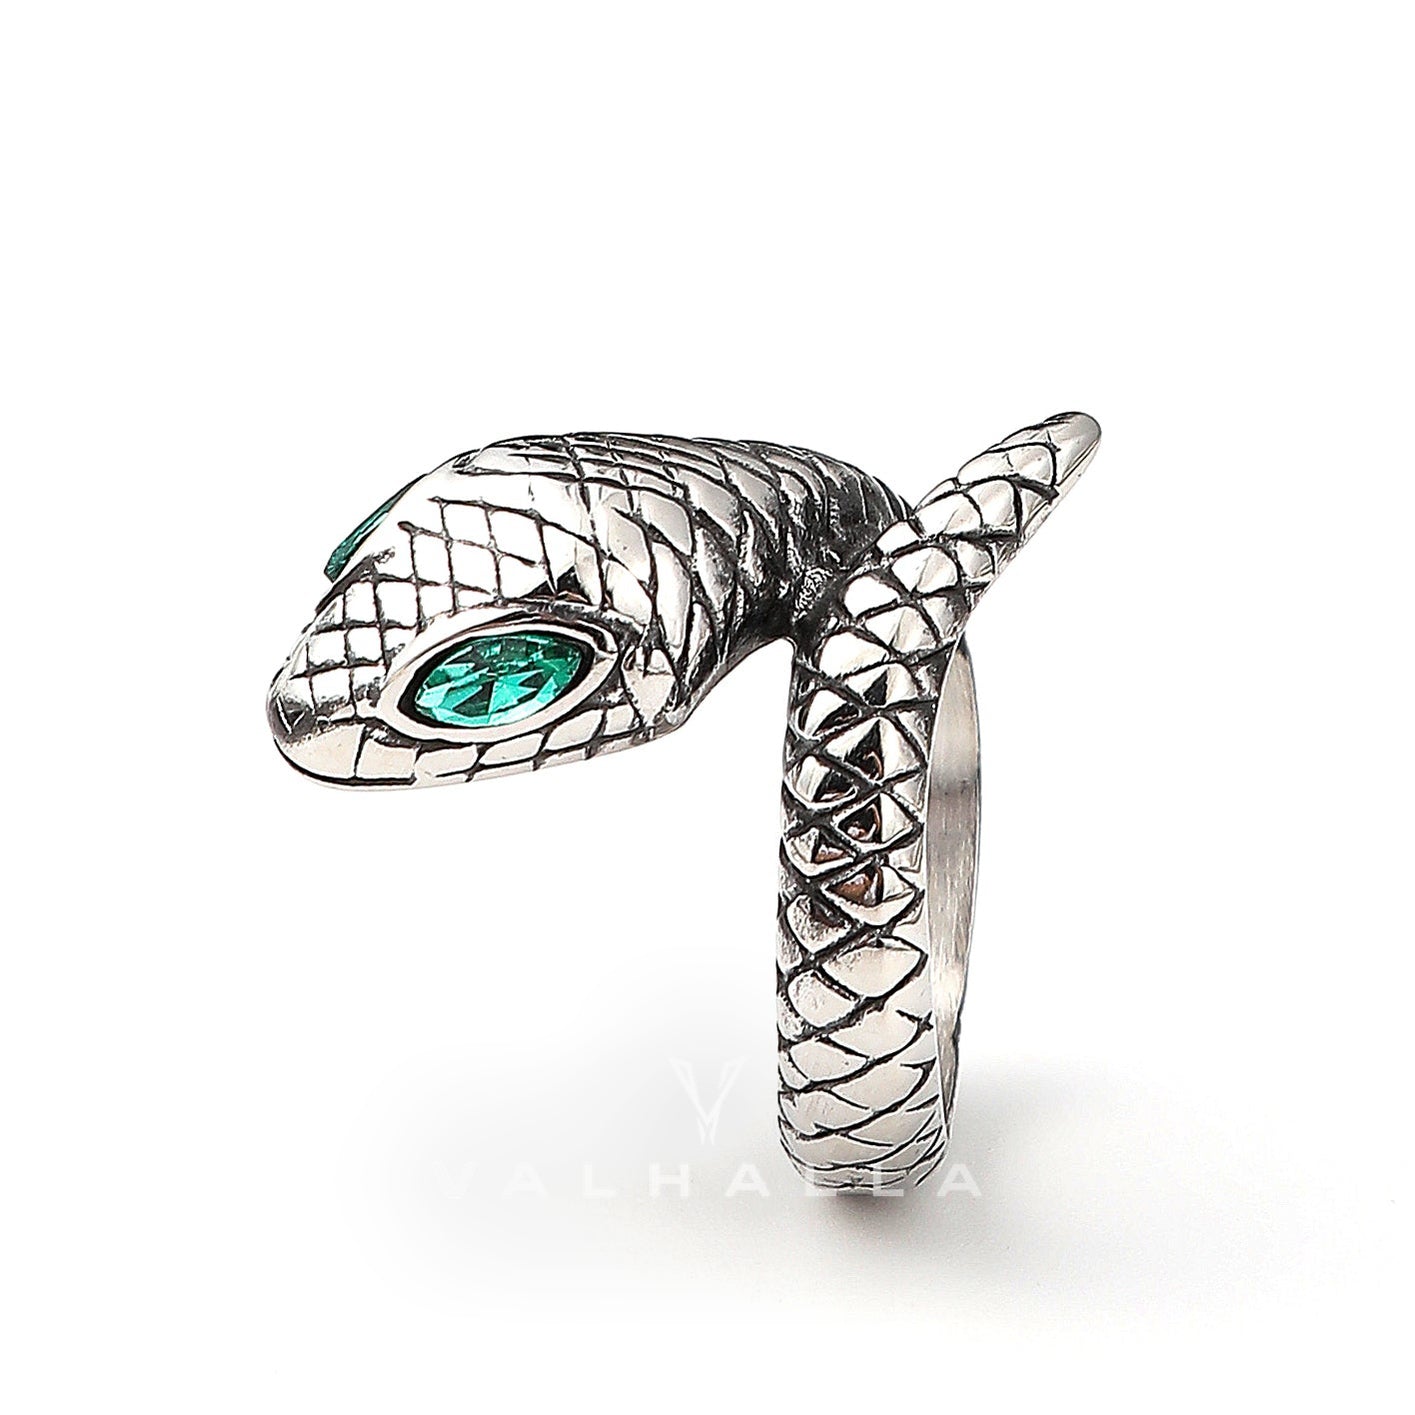 Punk Green-Eyed Snake Stainless Steel Animal Ring